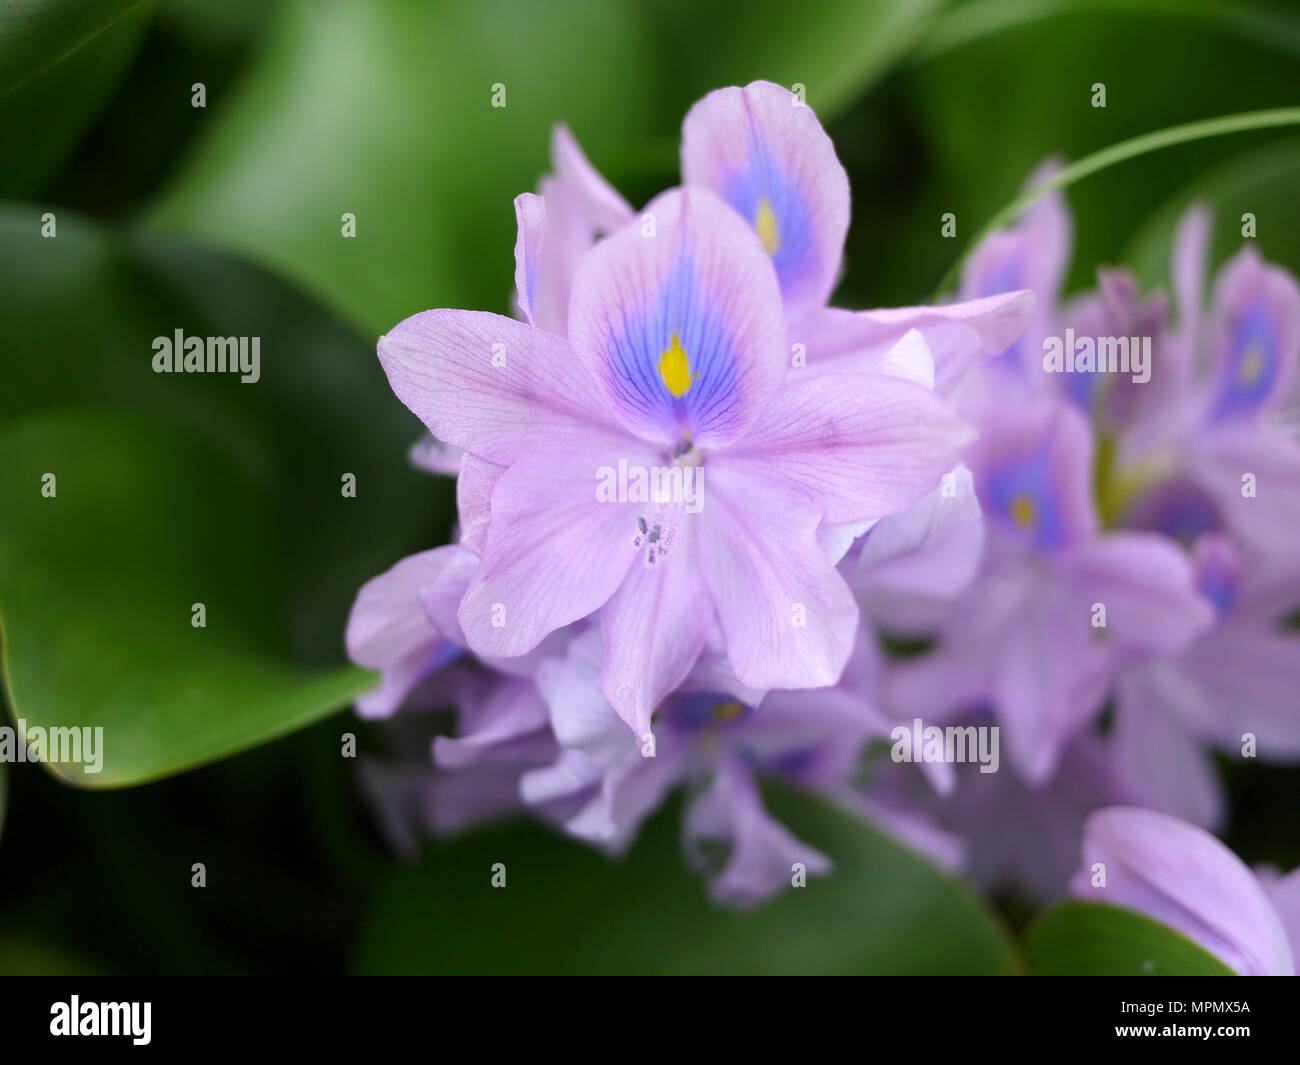 Bella close up viola comune giacinto di acqua con curva e la sfocatura foglie verdi Foto Stock